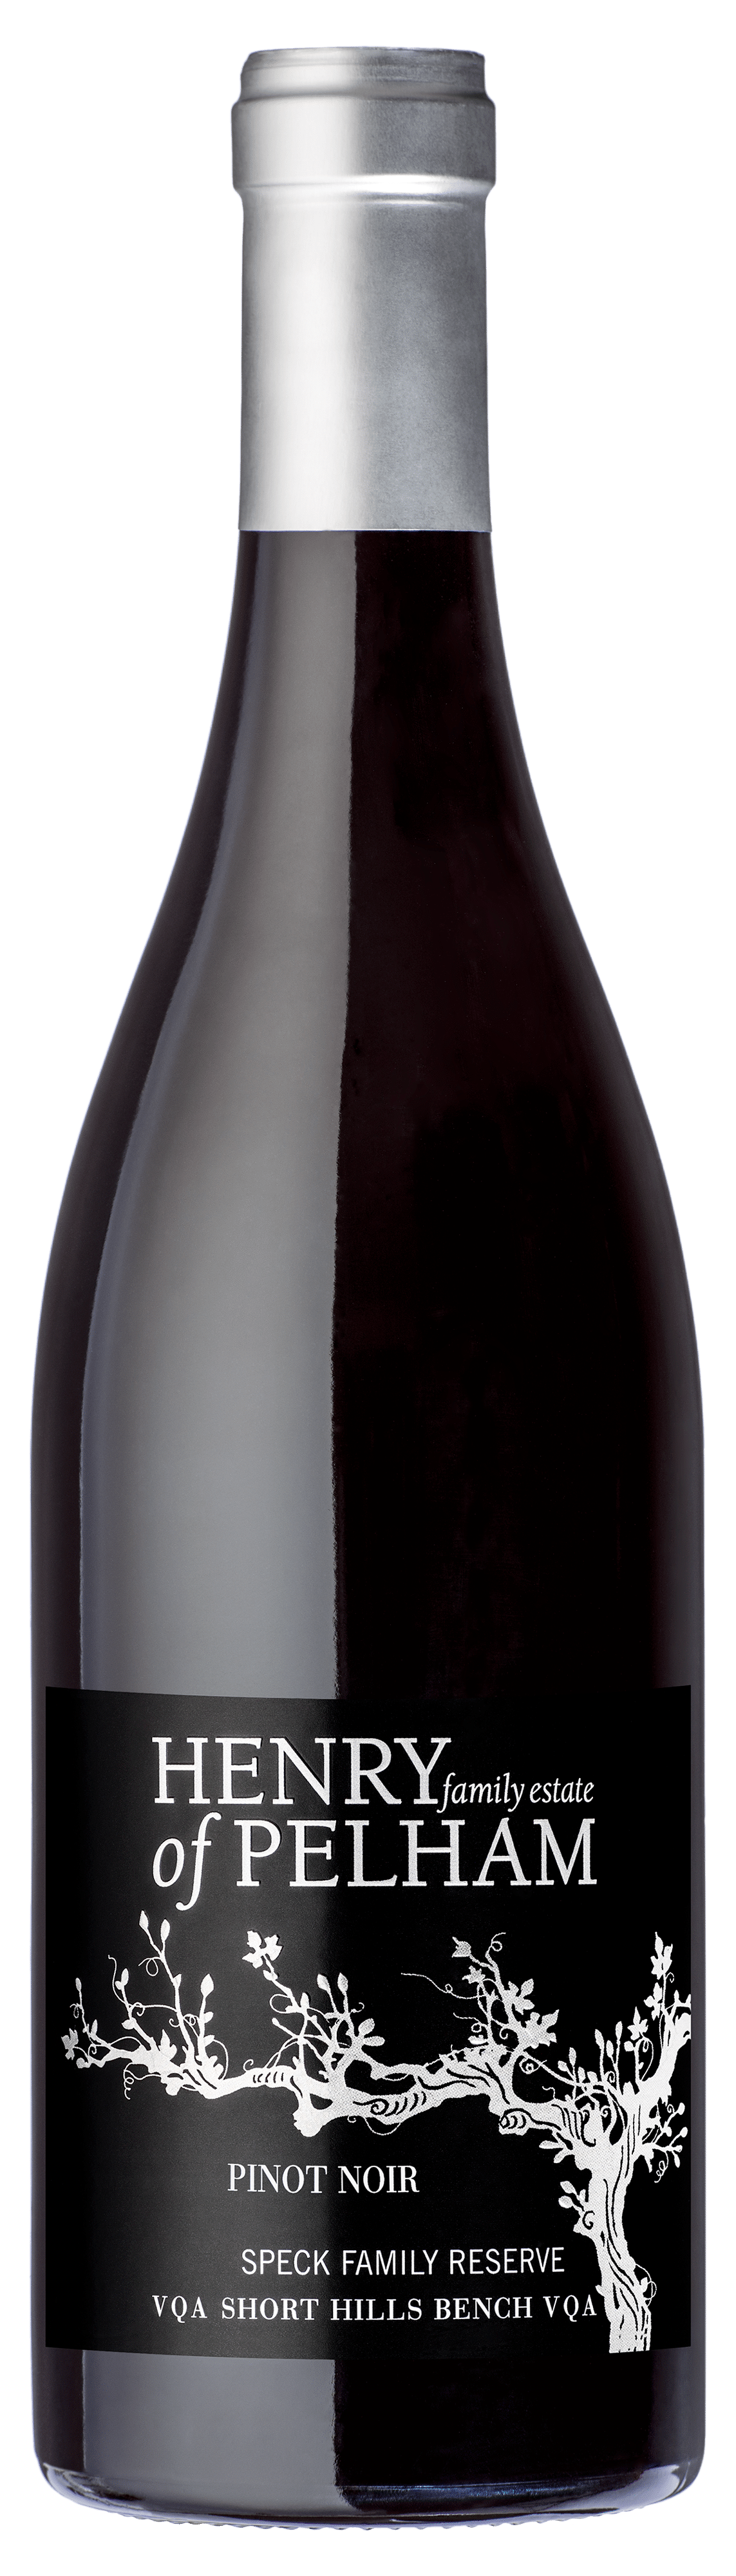 Pinot Noir Speck Family Reservered wine recipessmooth red wineruffino red winerecipes with red winerecipe red winemedium-bodied red winesmooth red wine LCBOrecipe red wine